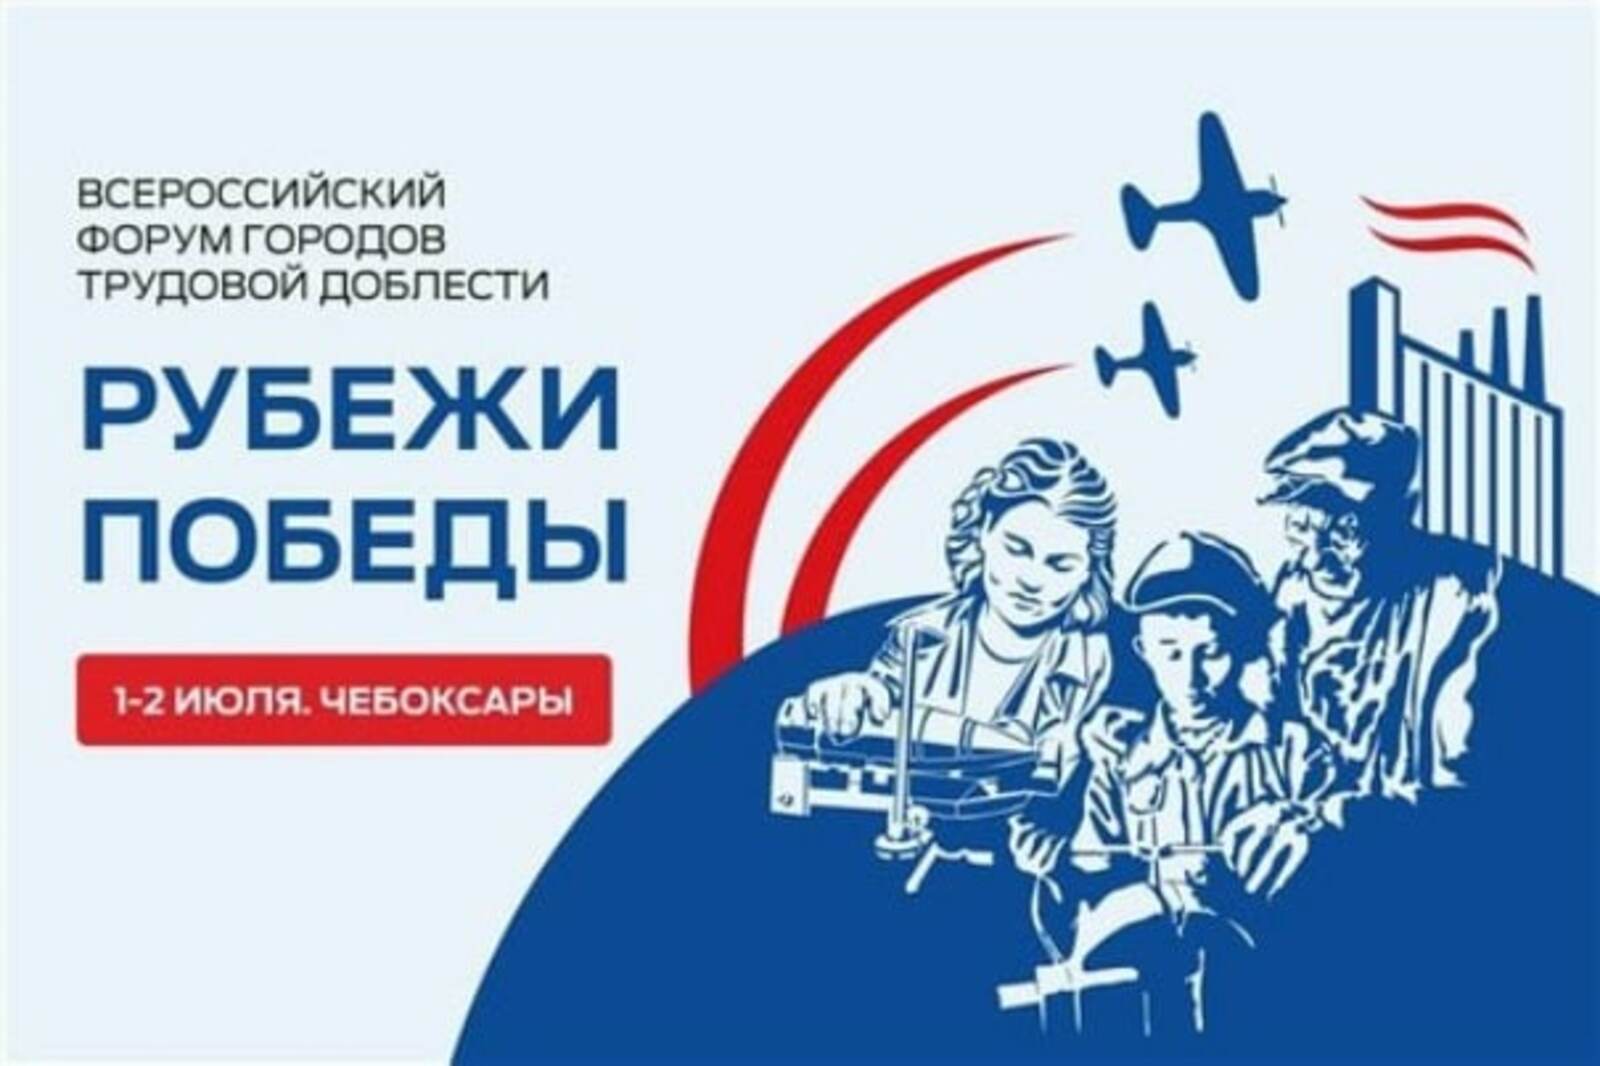 Уфа примет участие во Всероссийском форуме городов